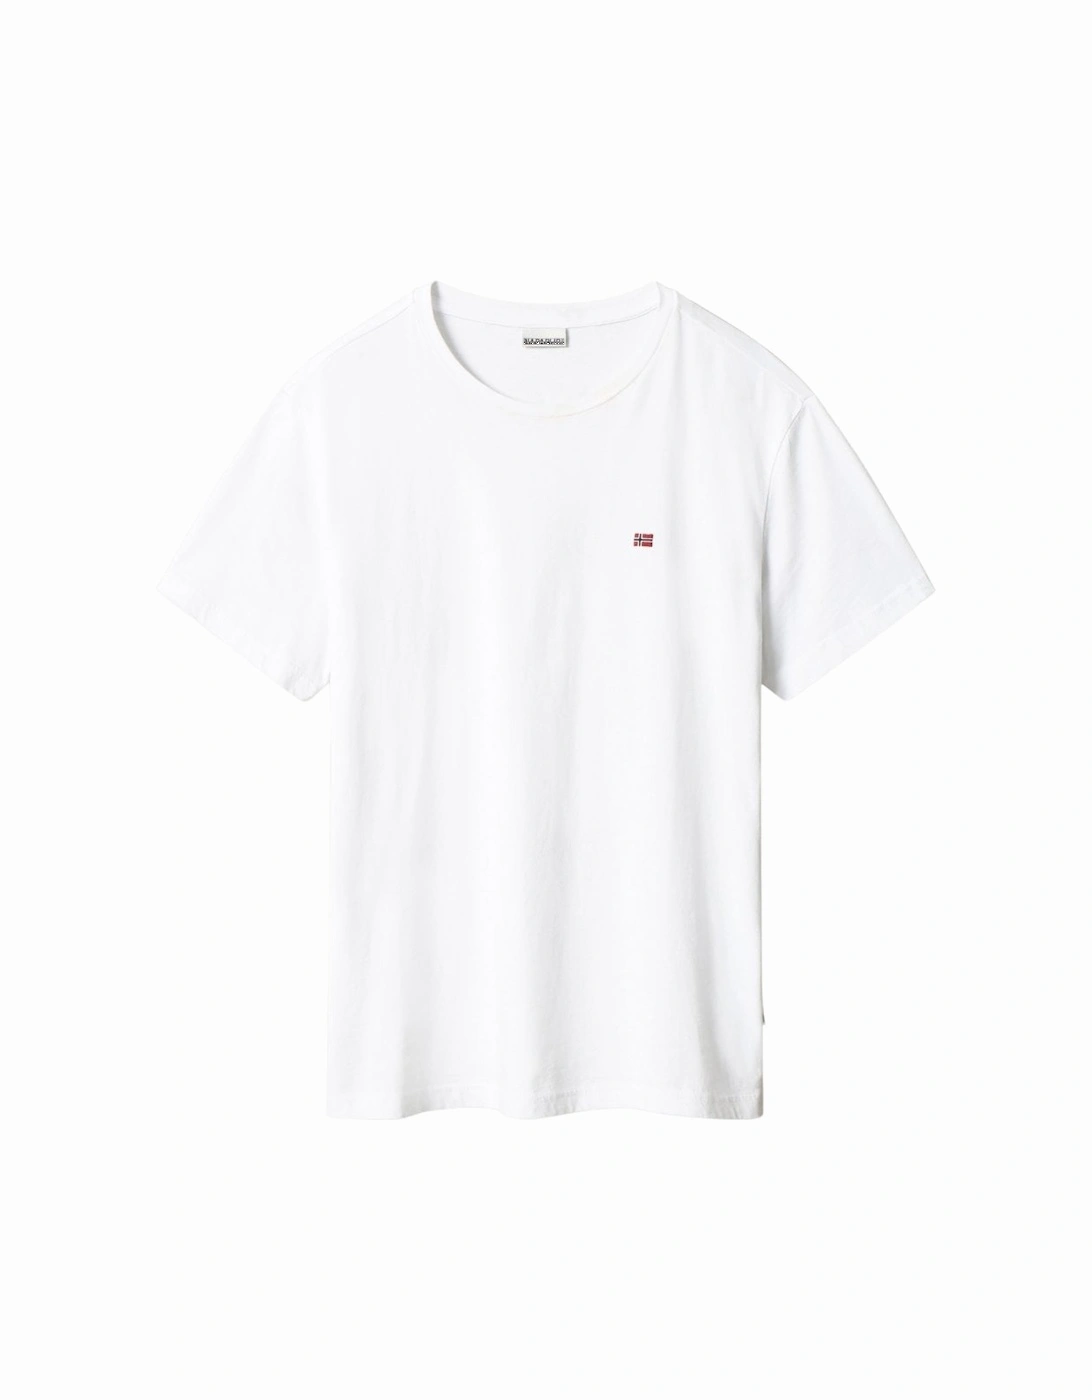 Salis T-Shirt - Bright White, 6 of 5